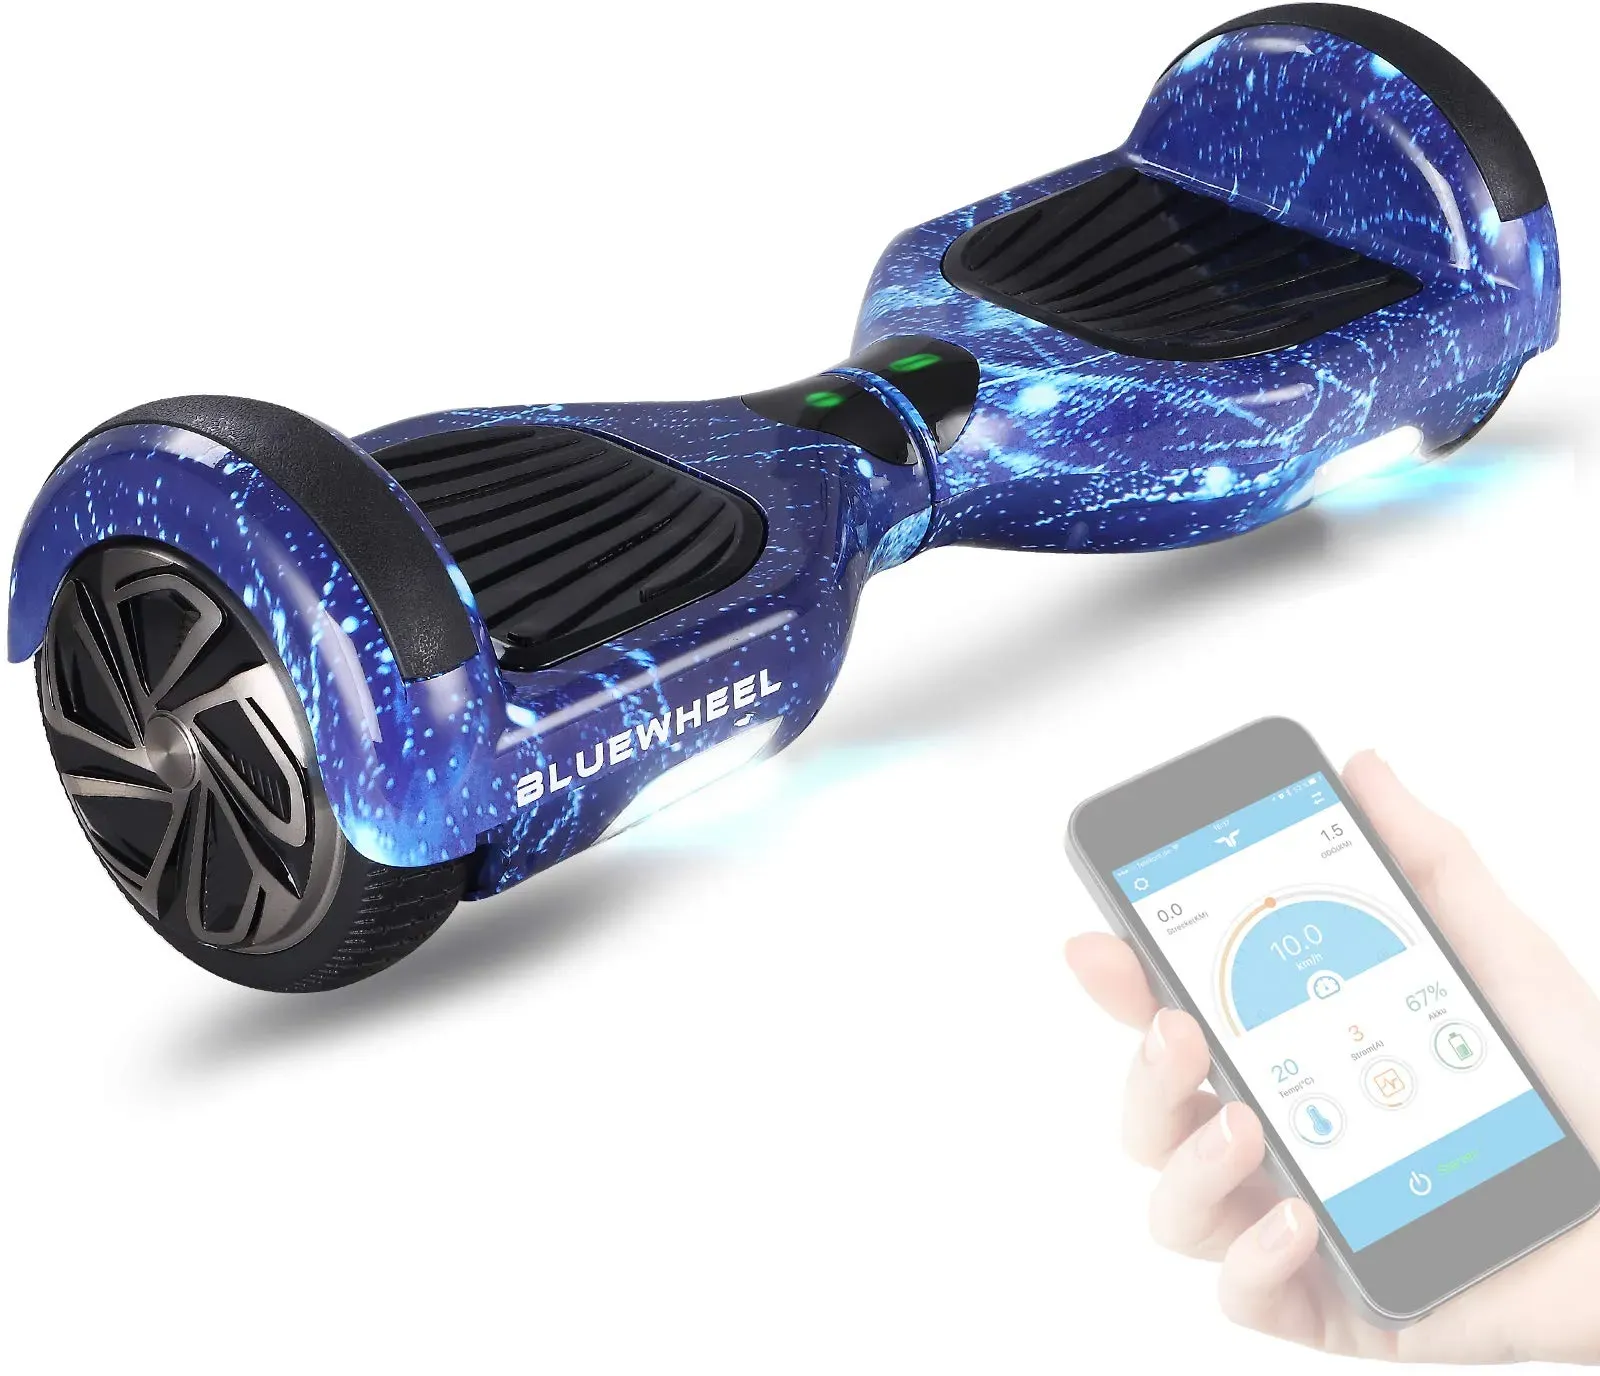 6,5" Premium Hoverboard Bluewheel HX310s - Deutsches Qualitätsunternehmen - Kinder Sicherheitsmodus & App - Bluetooth Lautsprecher - Starker Dual Motor - LED - Elektro Skateboard Self Balance Scooter